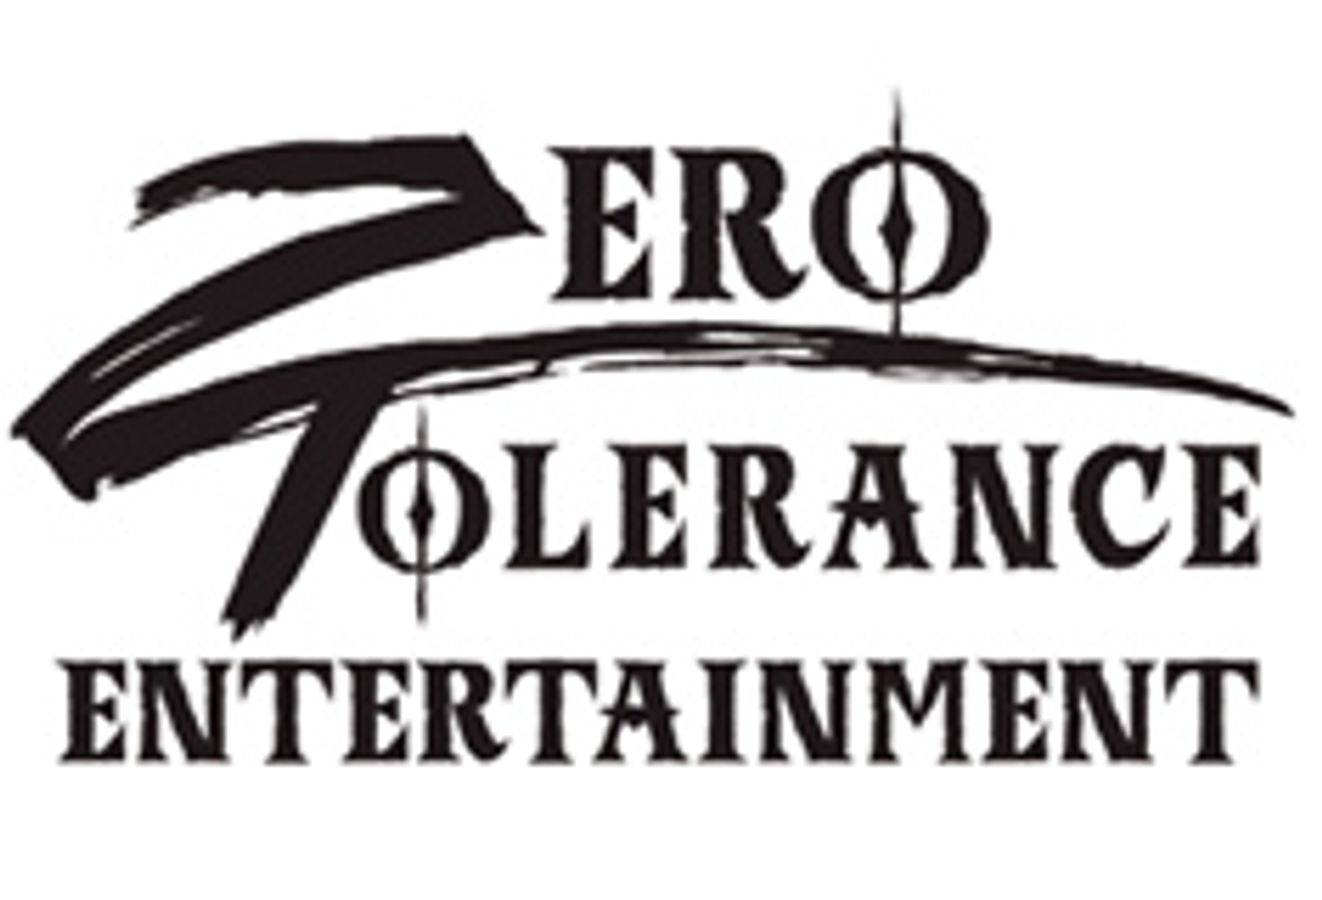 Zero Tolerance Entertainment